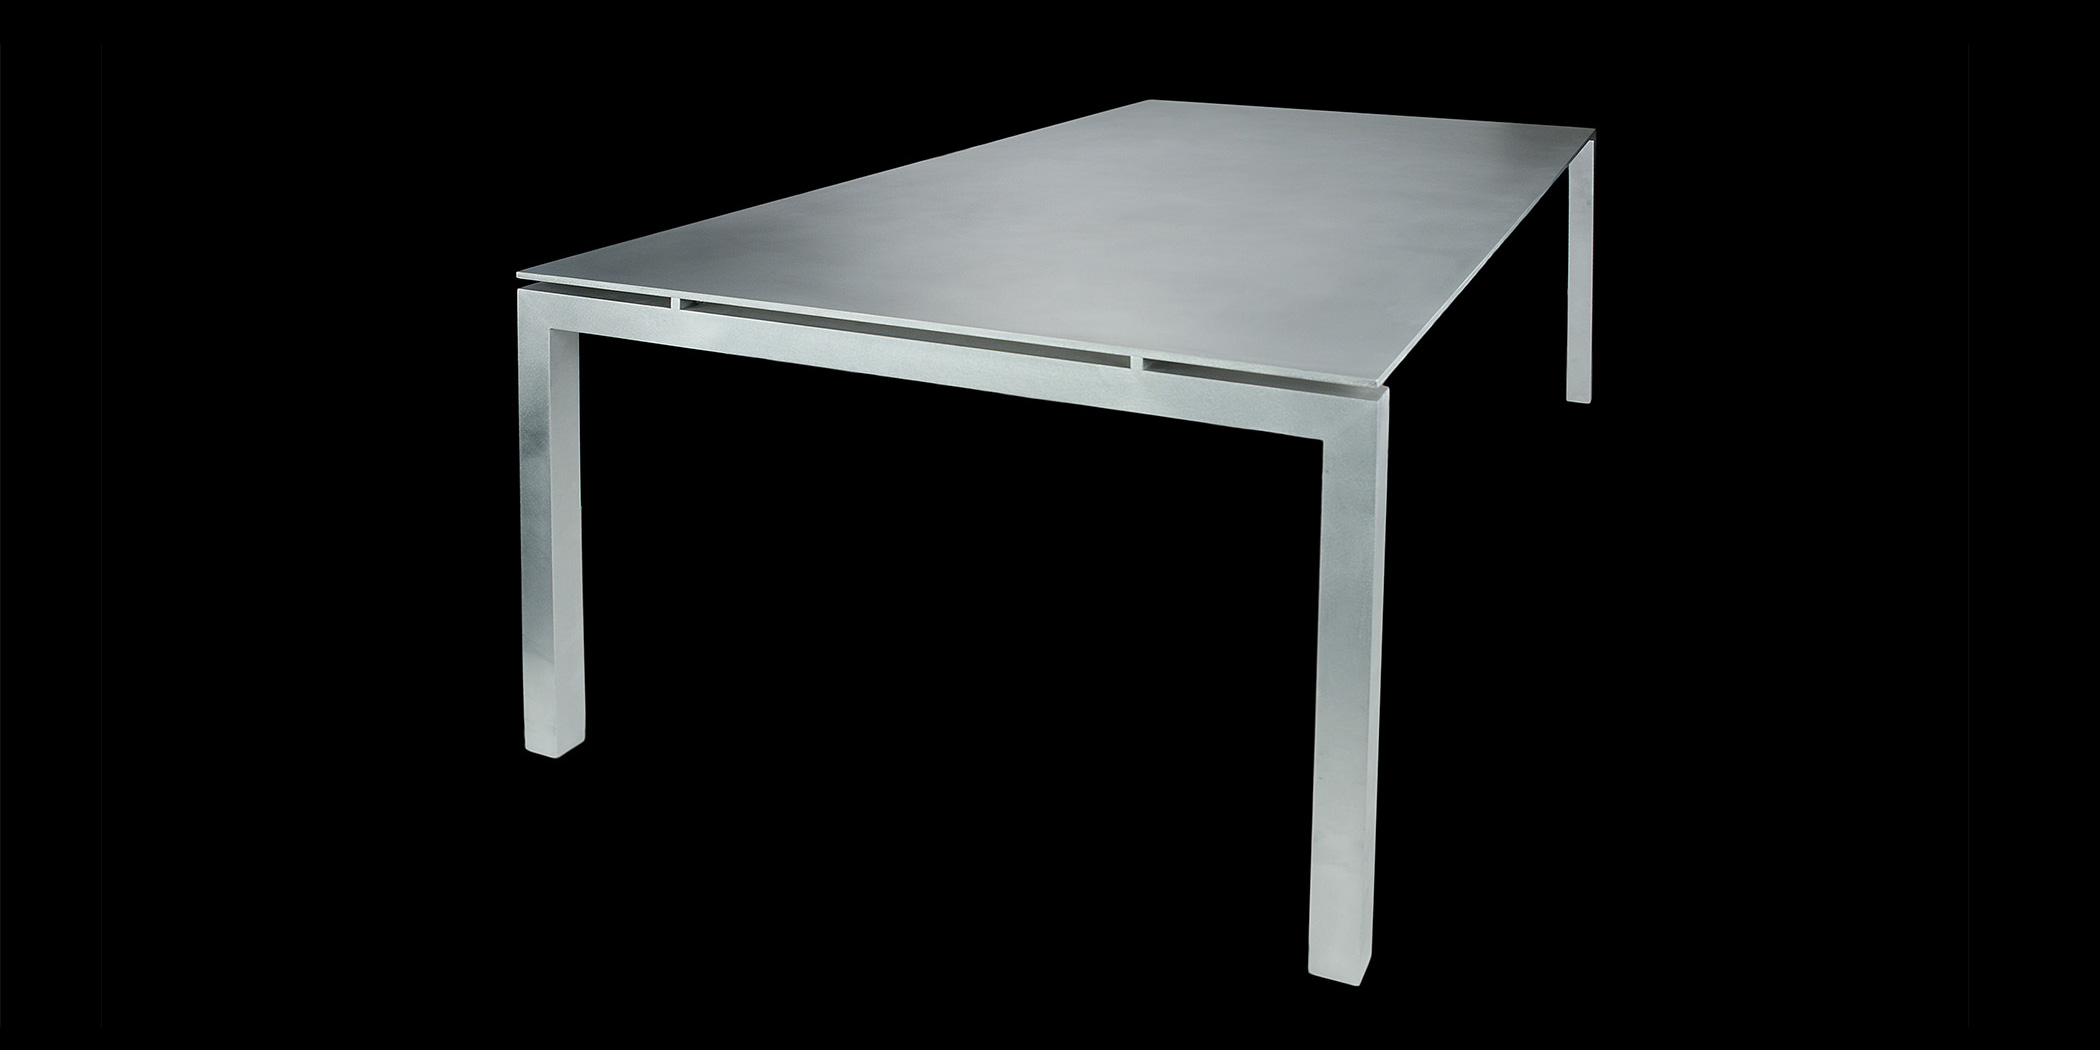 無垢のアルミ天板が圧倒的な存在感を醸し出す美しいテーブル。